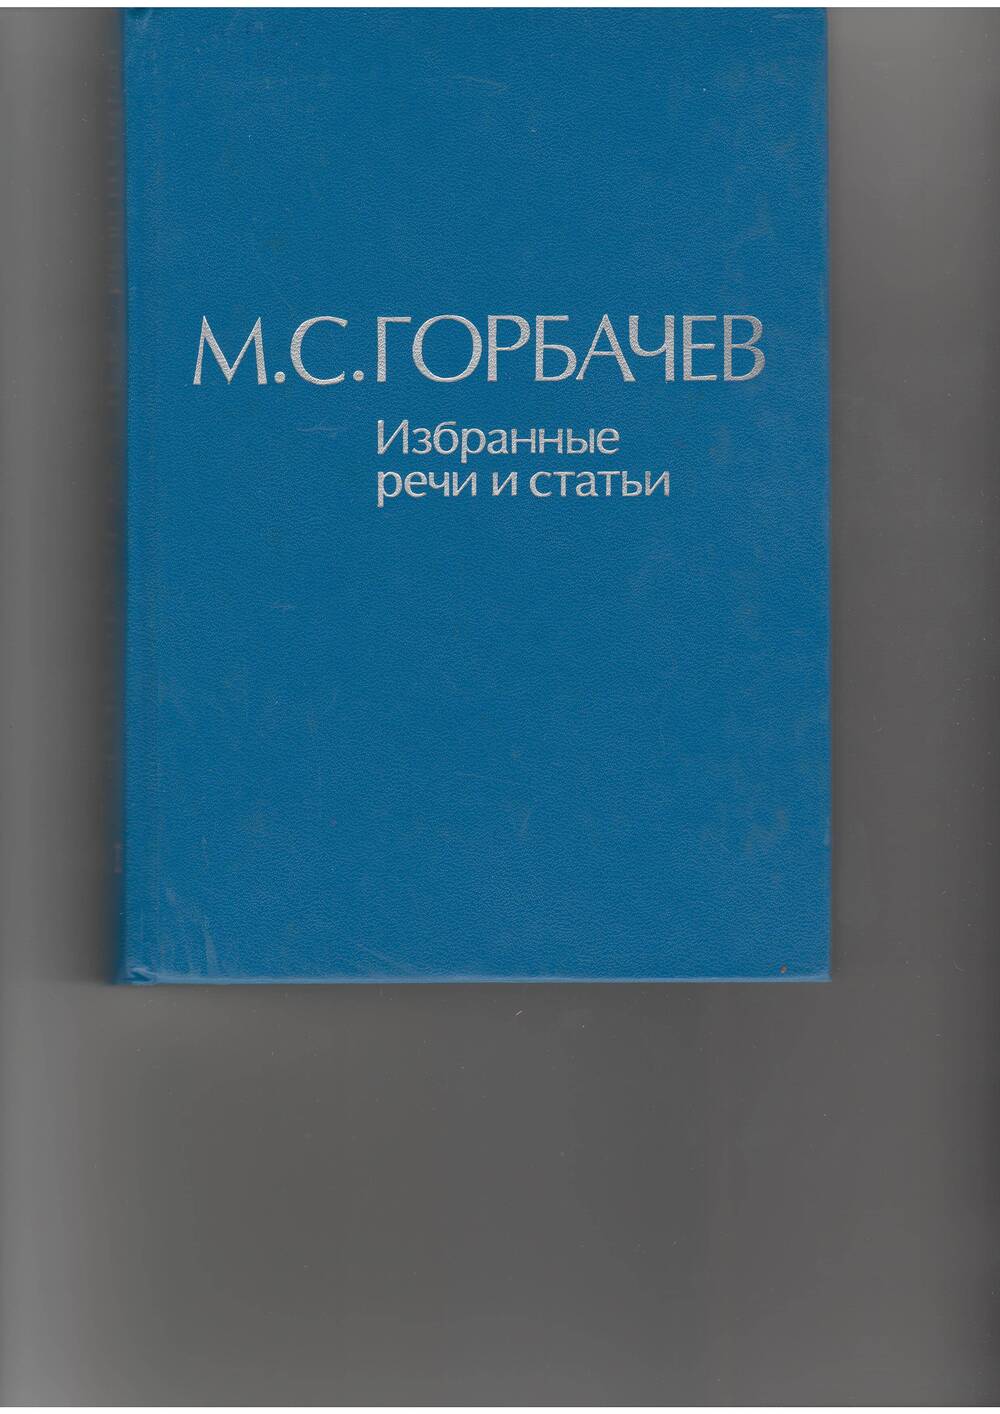 книга  Горбачев М. С. Избранные речи и статьи.т.4. - М: Наука,1989.